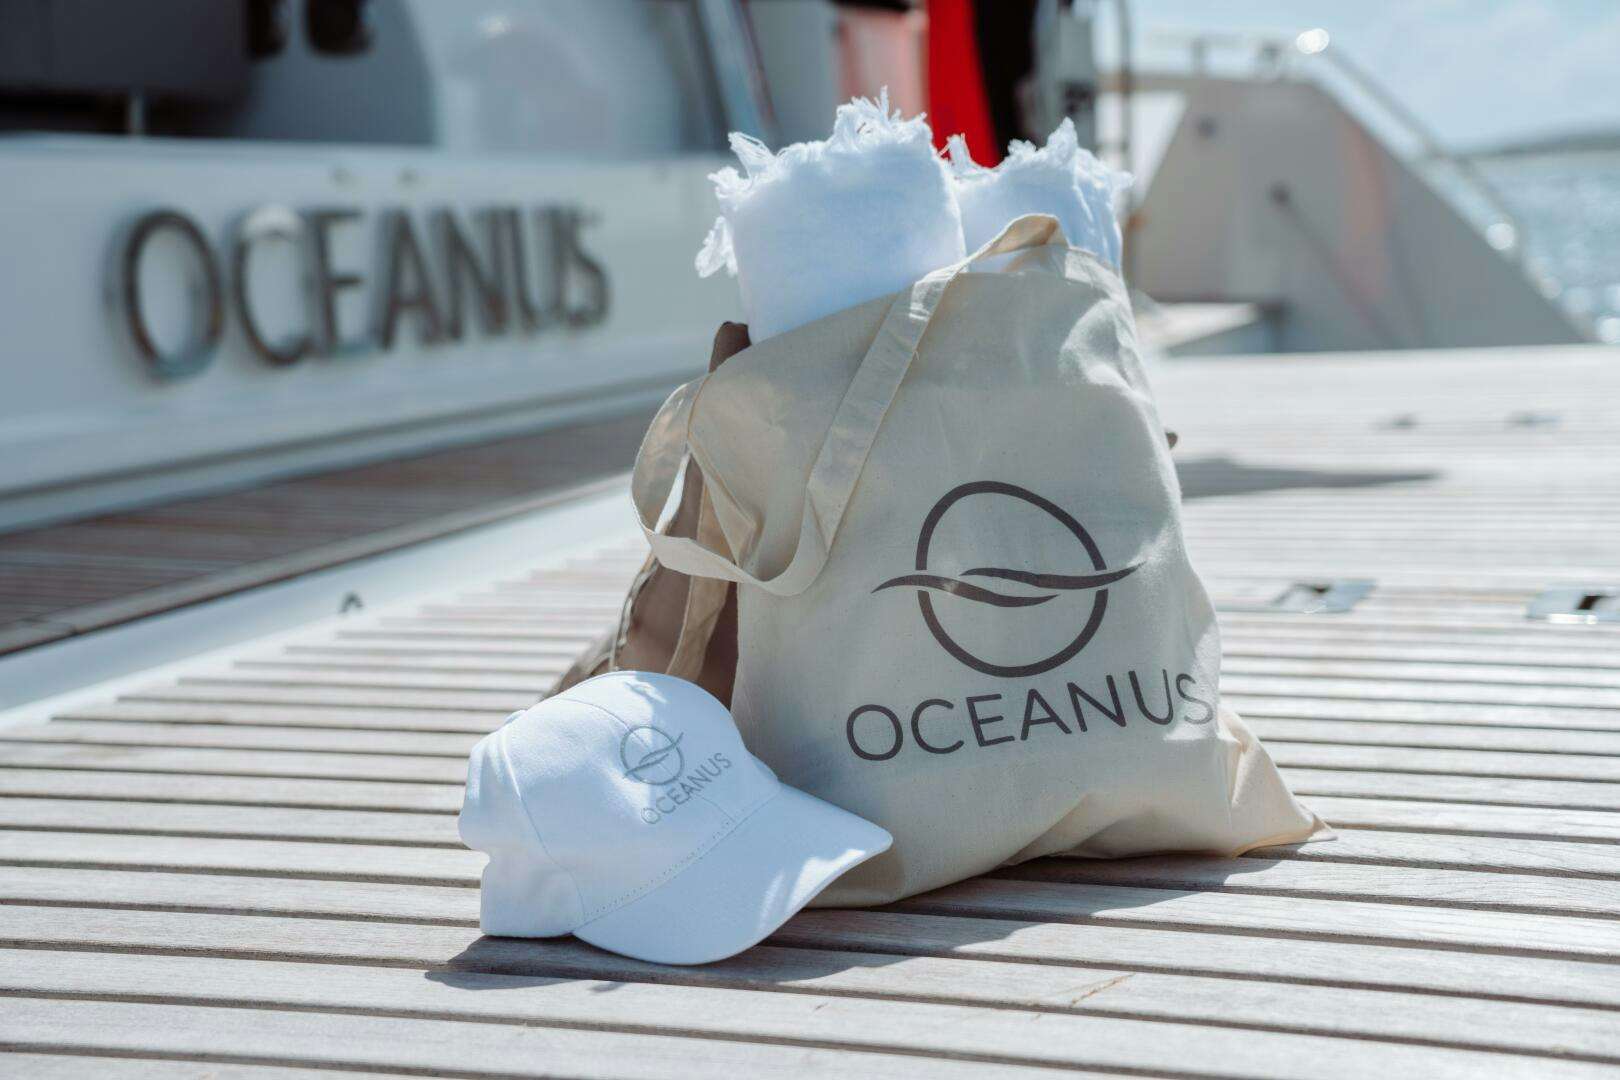 Oceanus
Yacht for Sale